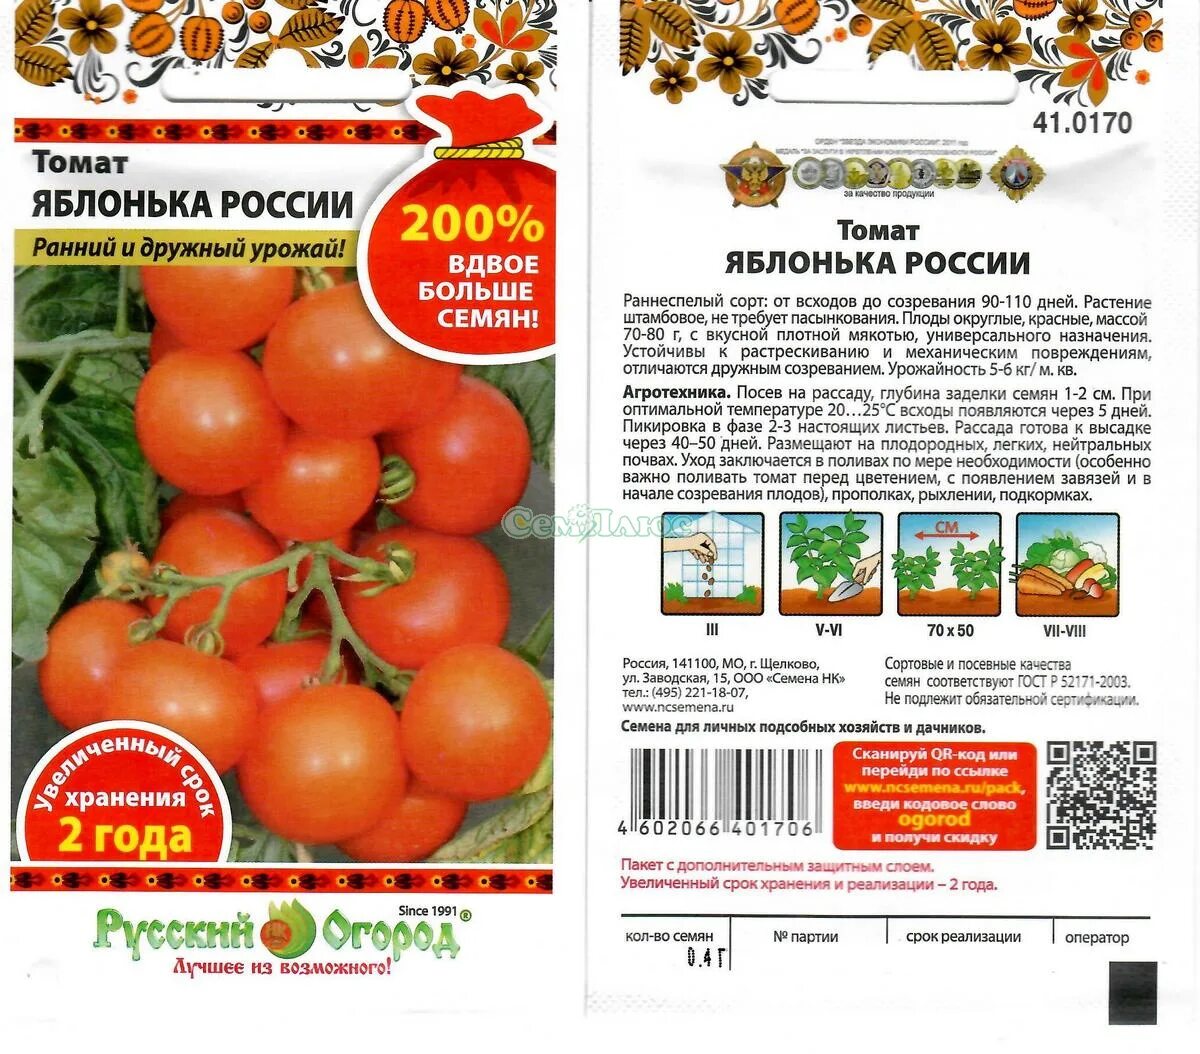 Яблонька россии томат описание отзывы характеристика сорта